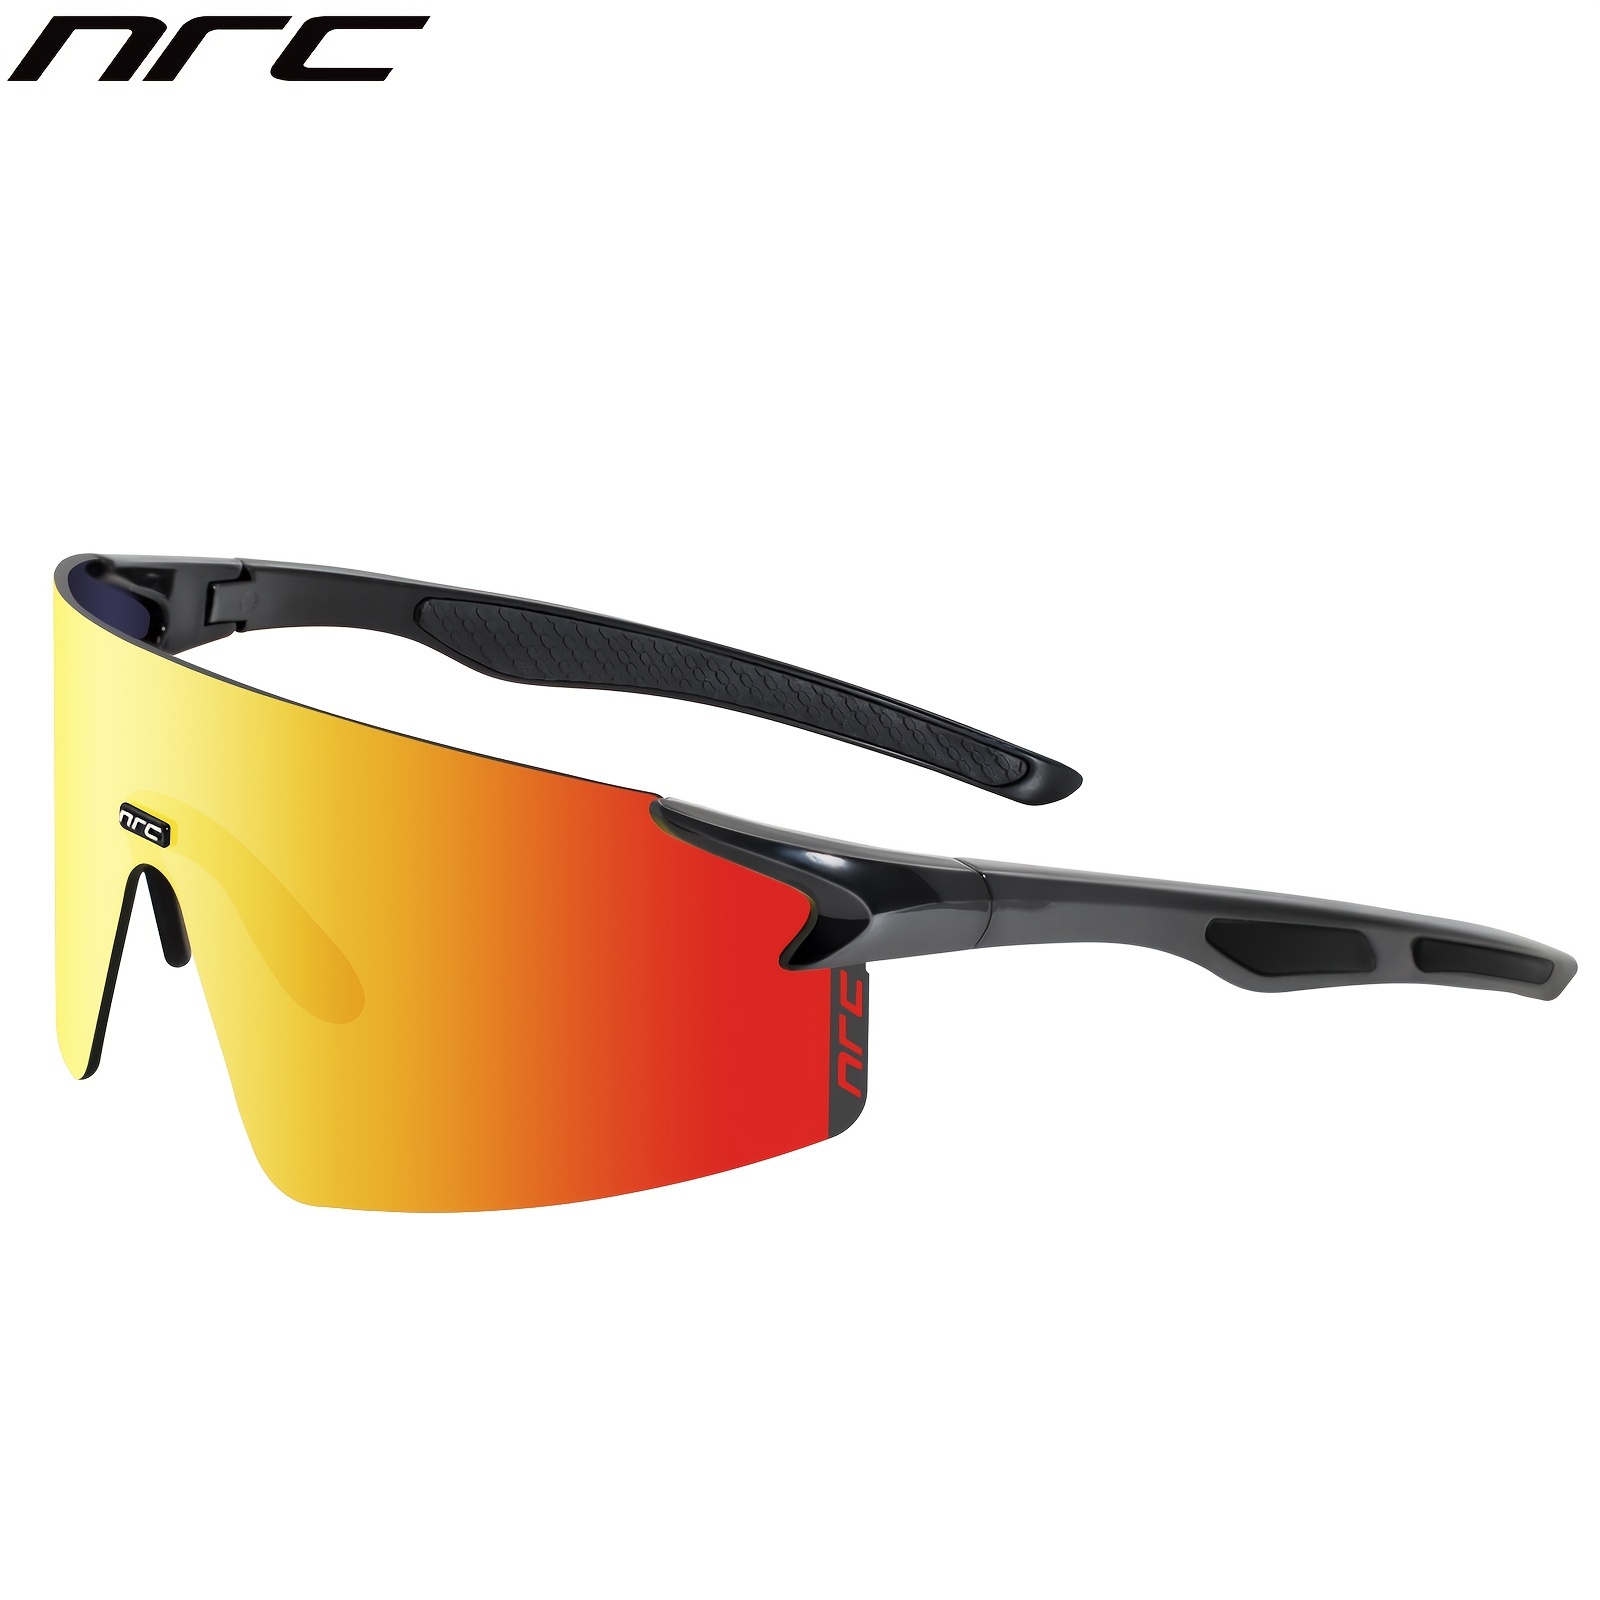 SCVCN 1 lentille sans boîte cyclisme lunettes de soleil lunettes